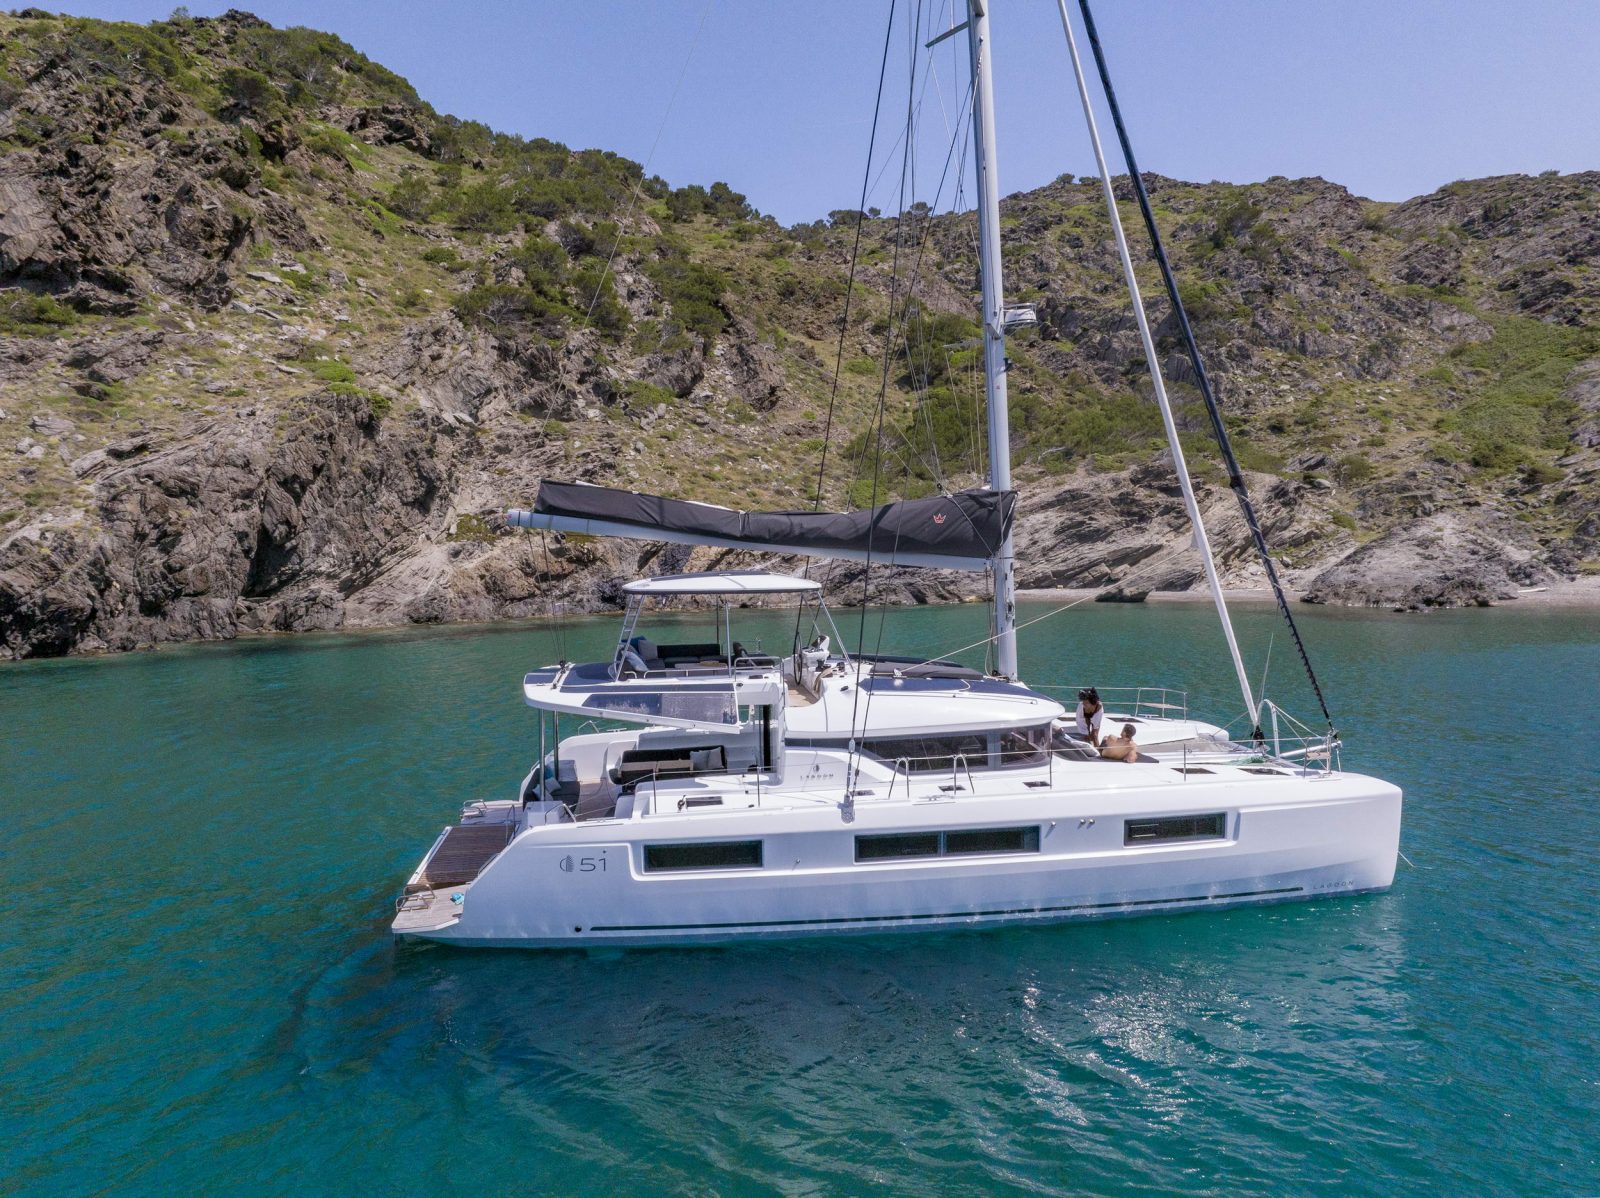 51 foot catamaran for sale